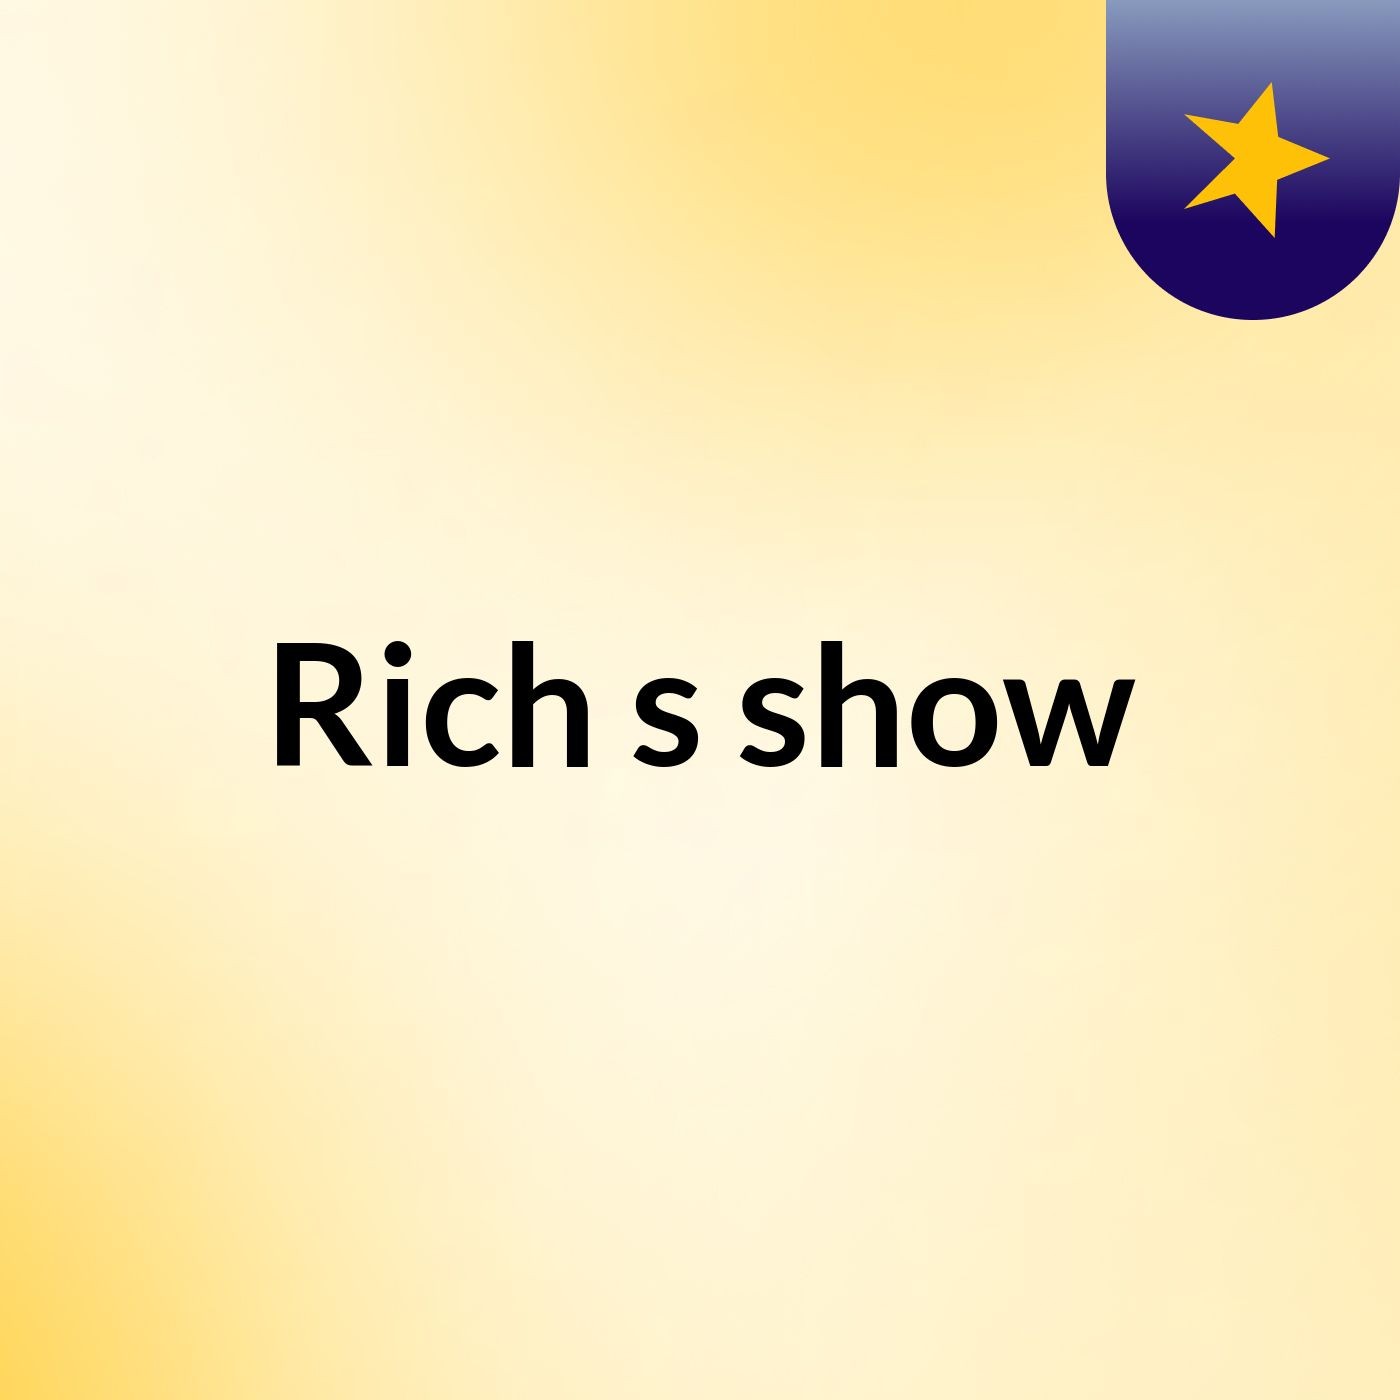 Rich's show